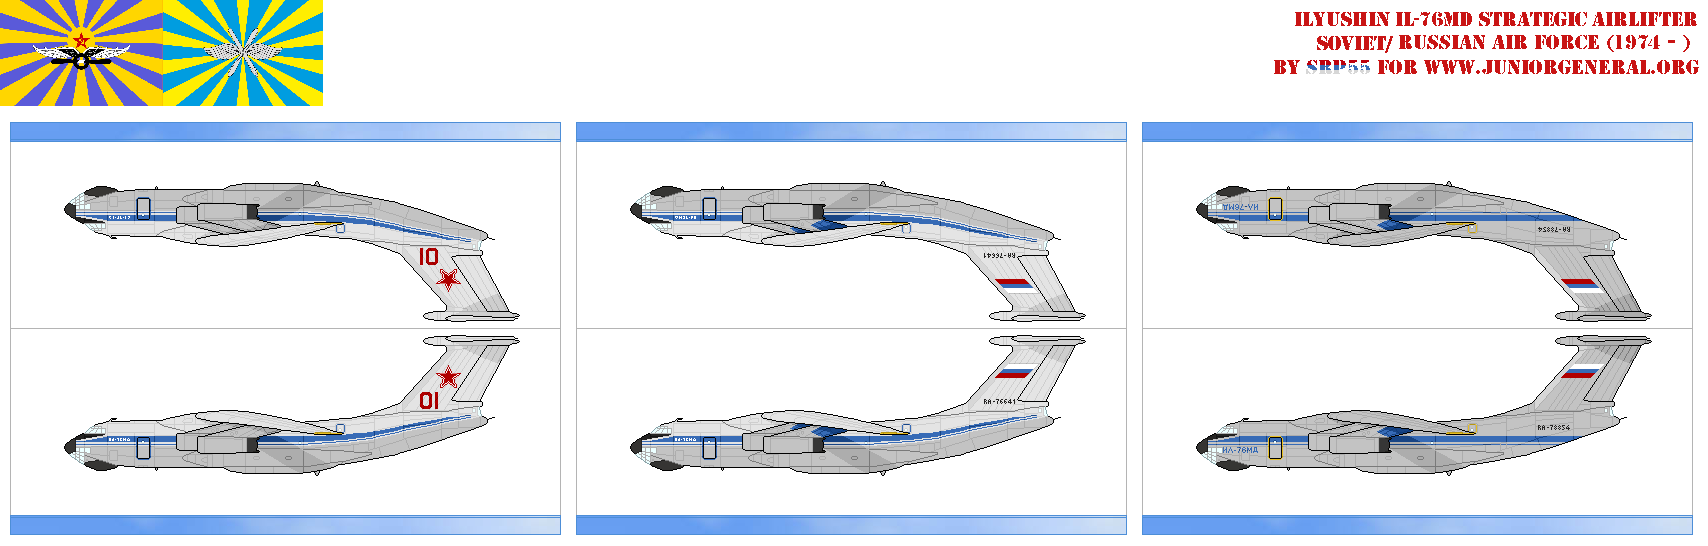 Soviet Il-76 MD